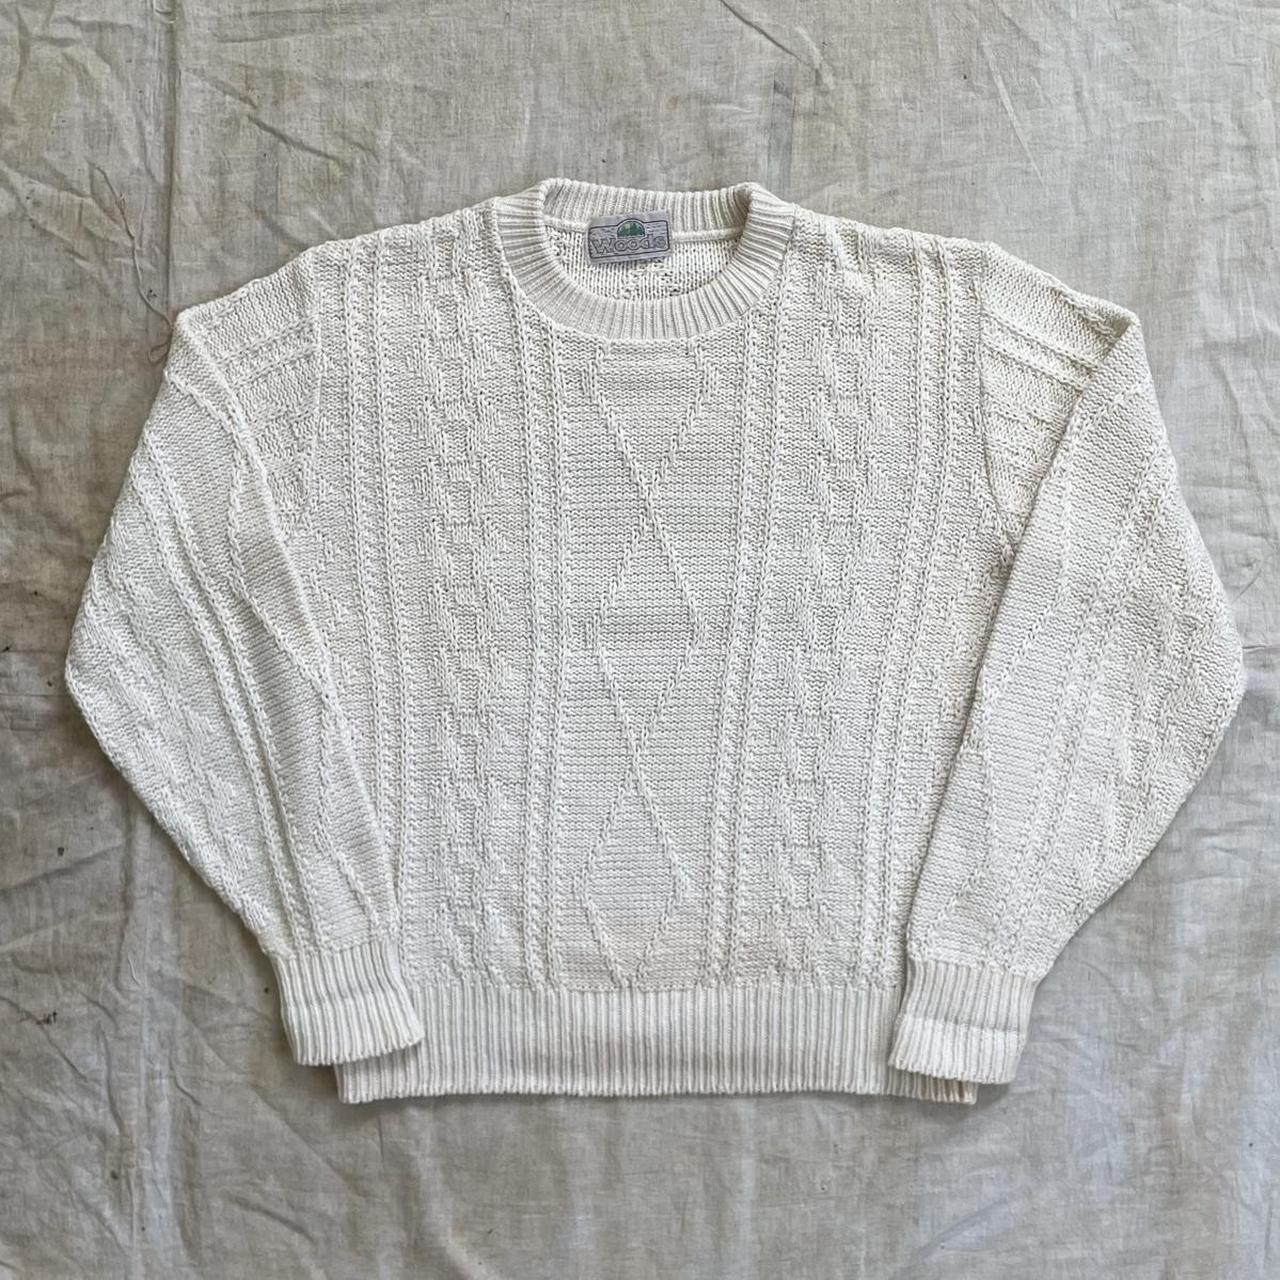 Vintage 70s Cable Knit Sweater -100% cotton... - Depop